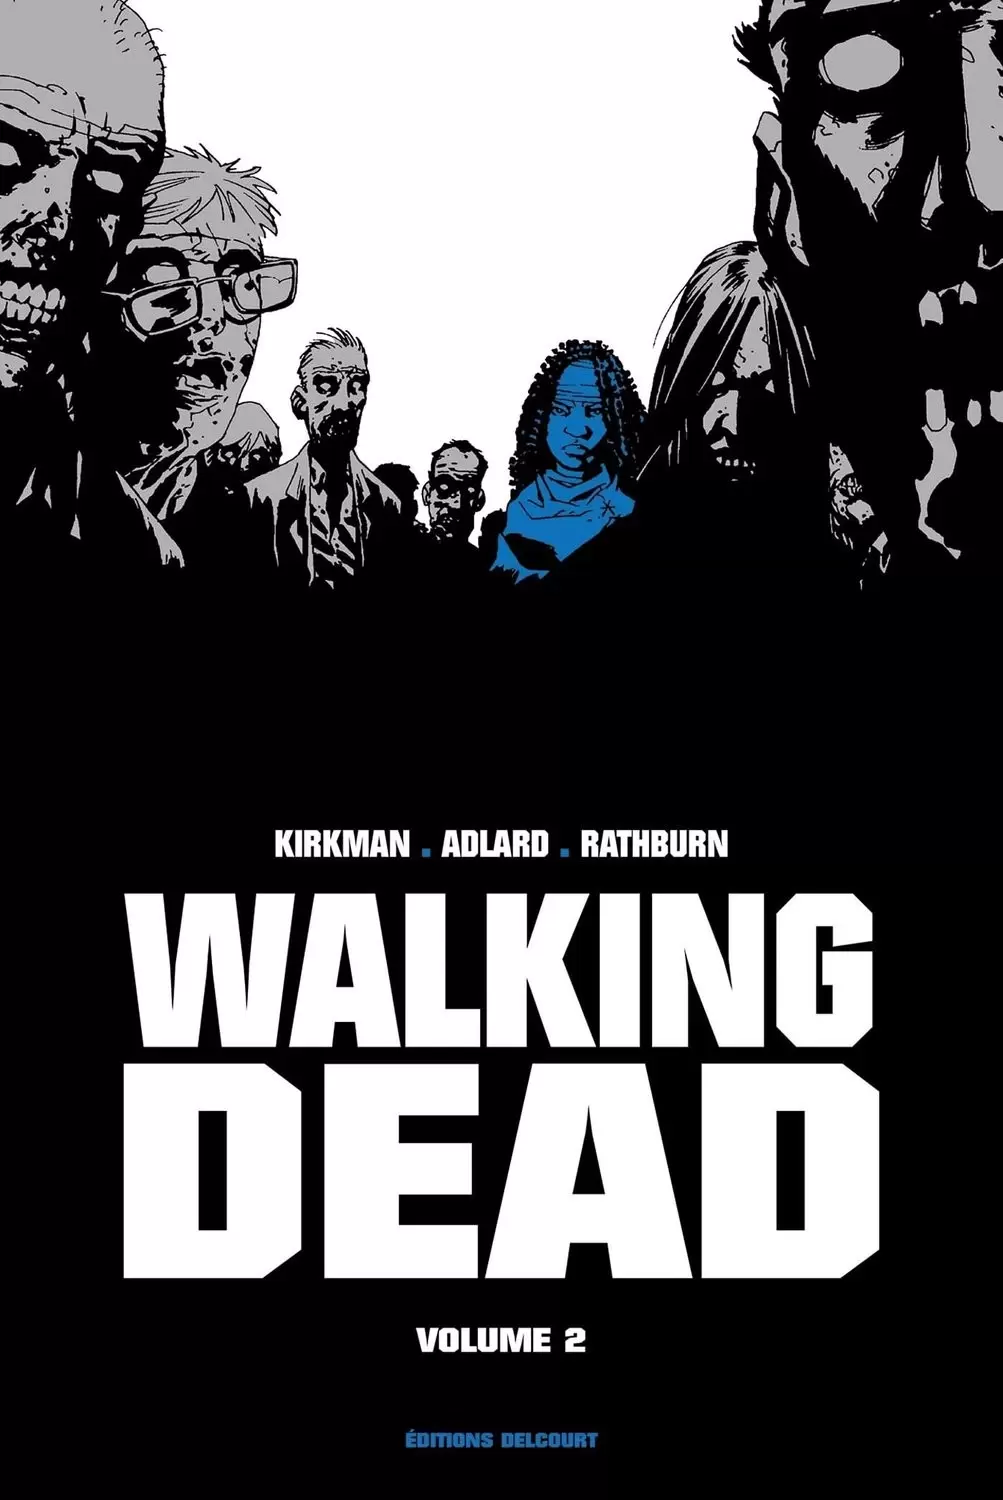 Walking Dead Prestige - Walking Dead Prestige Volume II